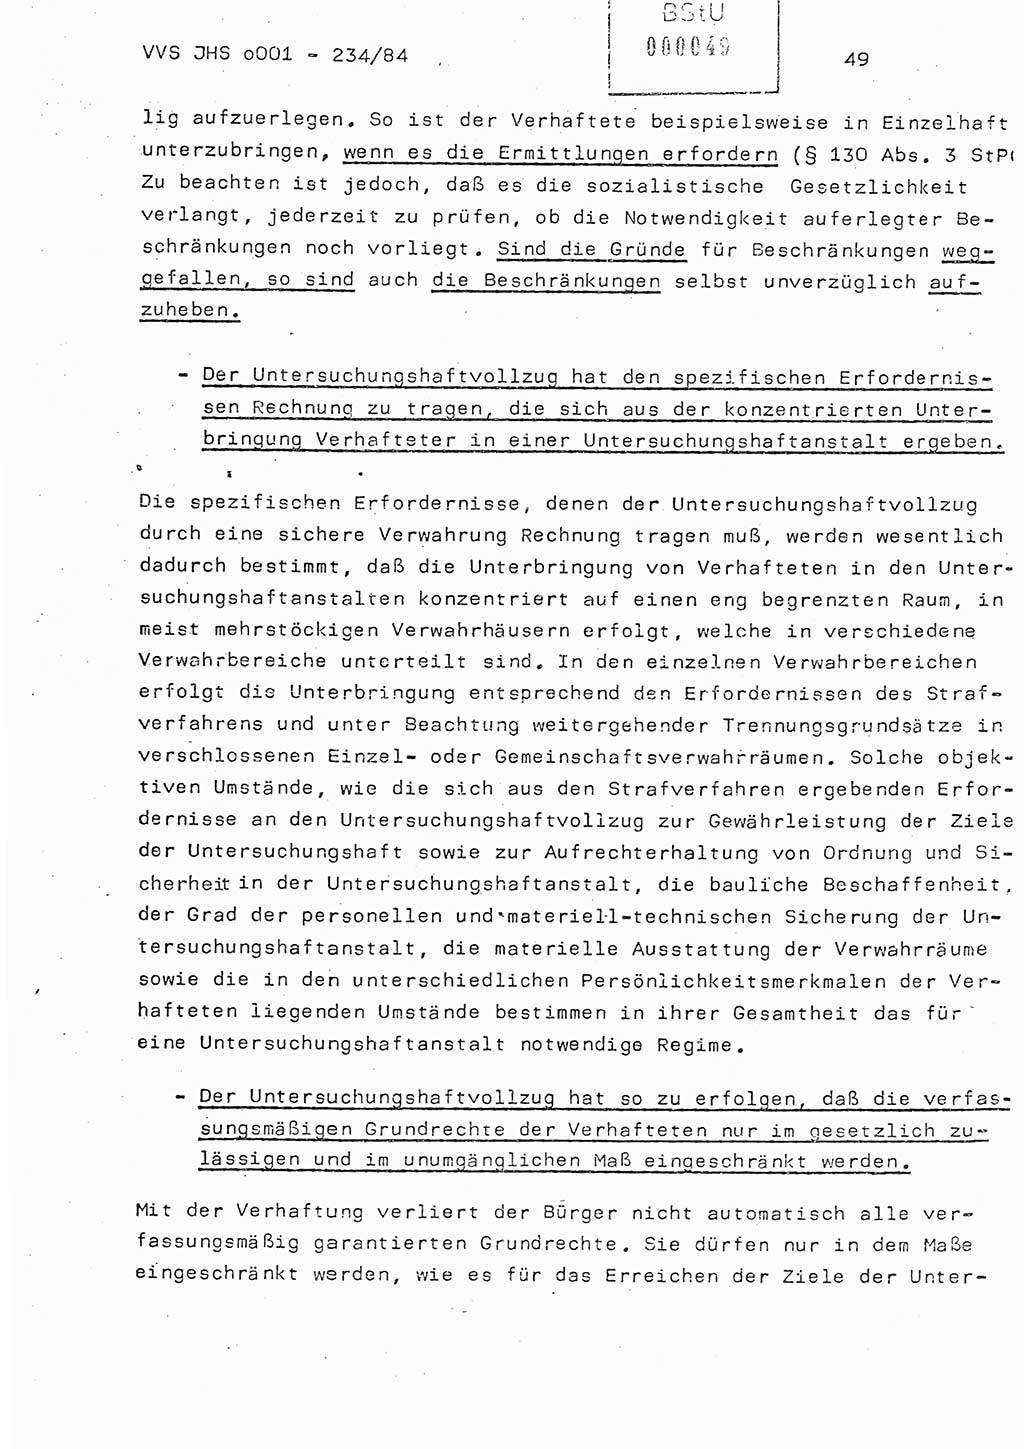 Dissertation Oberst Siegfried Rataizick (Abt. ⅩⅣ), Oberstleutnant Volkmar Heinz (Abt. ⅩⅣ), Oberstleutnant Werner Stein (HA Ⅸ), Hauptmann Heinz Conrad (JHS), Ministerium für Staatssicherheit (MfS) [Deutsche Demokratische Republik (DDR)], Juristische Hochschule (JHS), Vertrauliche Verschlußsache (VVS) o001-234/84, Potsdam 1984, Seite 49 (Diss. MfS DDR JHS VVS o001-234/84 1984, S. 49)